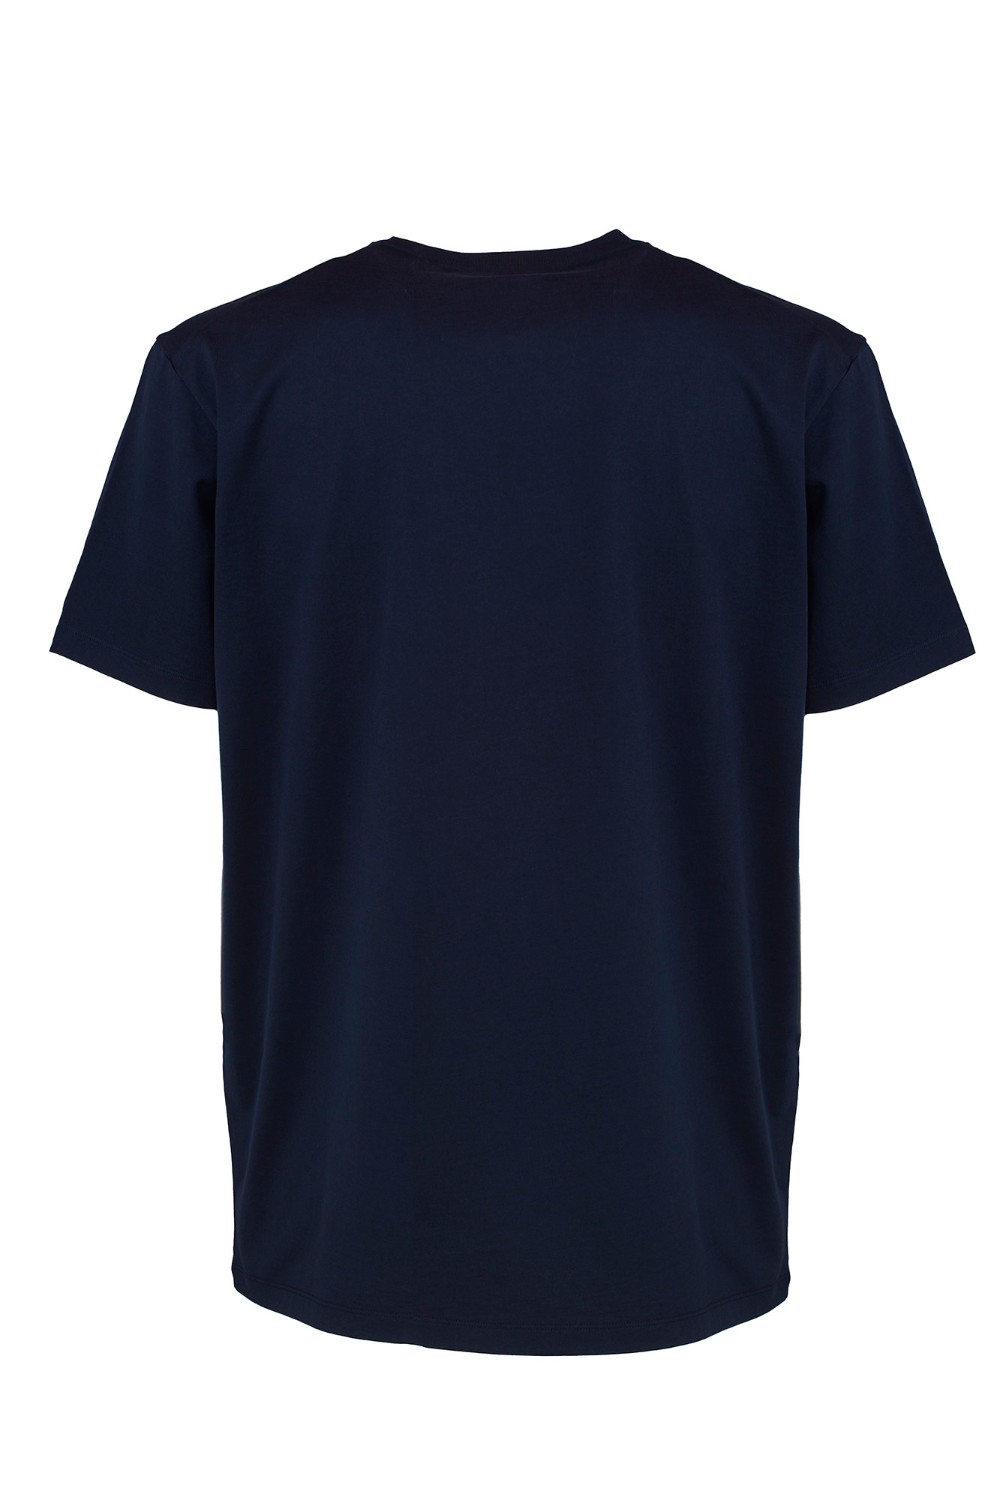 shop DSQUARED2  T-shirt: DSQUARED2 t-shirt in cotone.
Girocollo.
Maniche corte.
Stampa lettering sul fronte.
Composizione: 100% Cotone.
Fabbricato in Portogallo.. S74GD1219 D20014-478 number 7696239